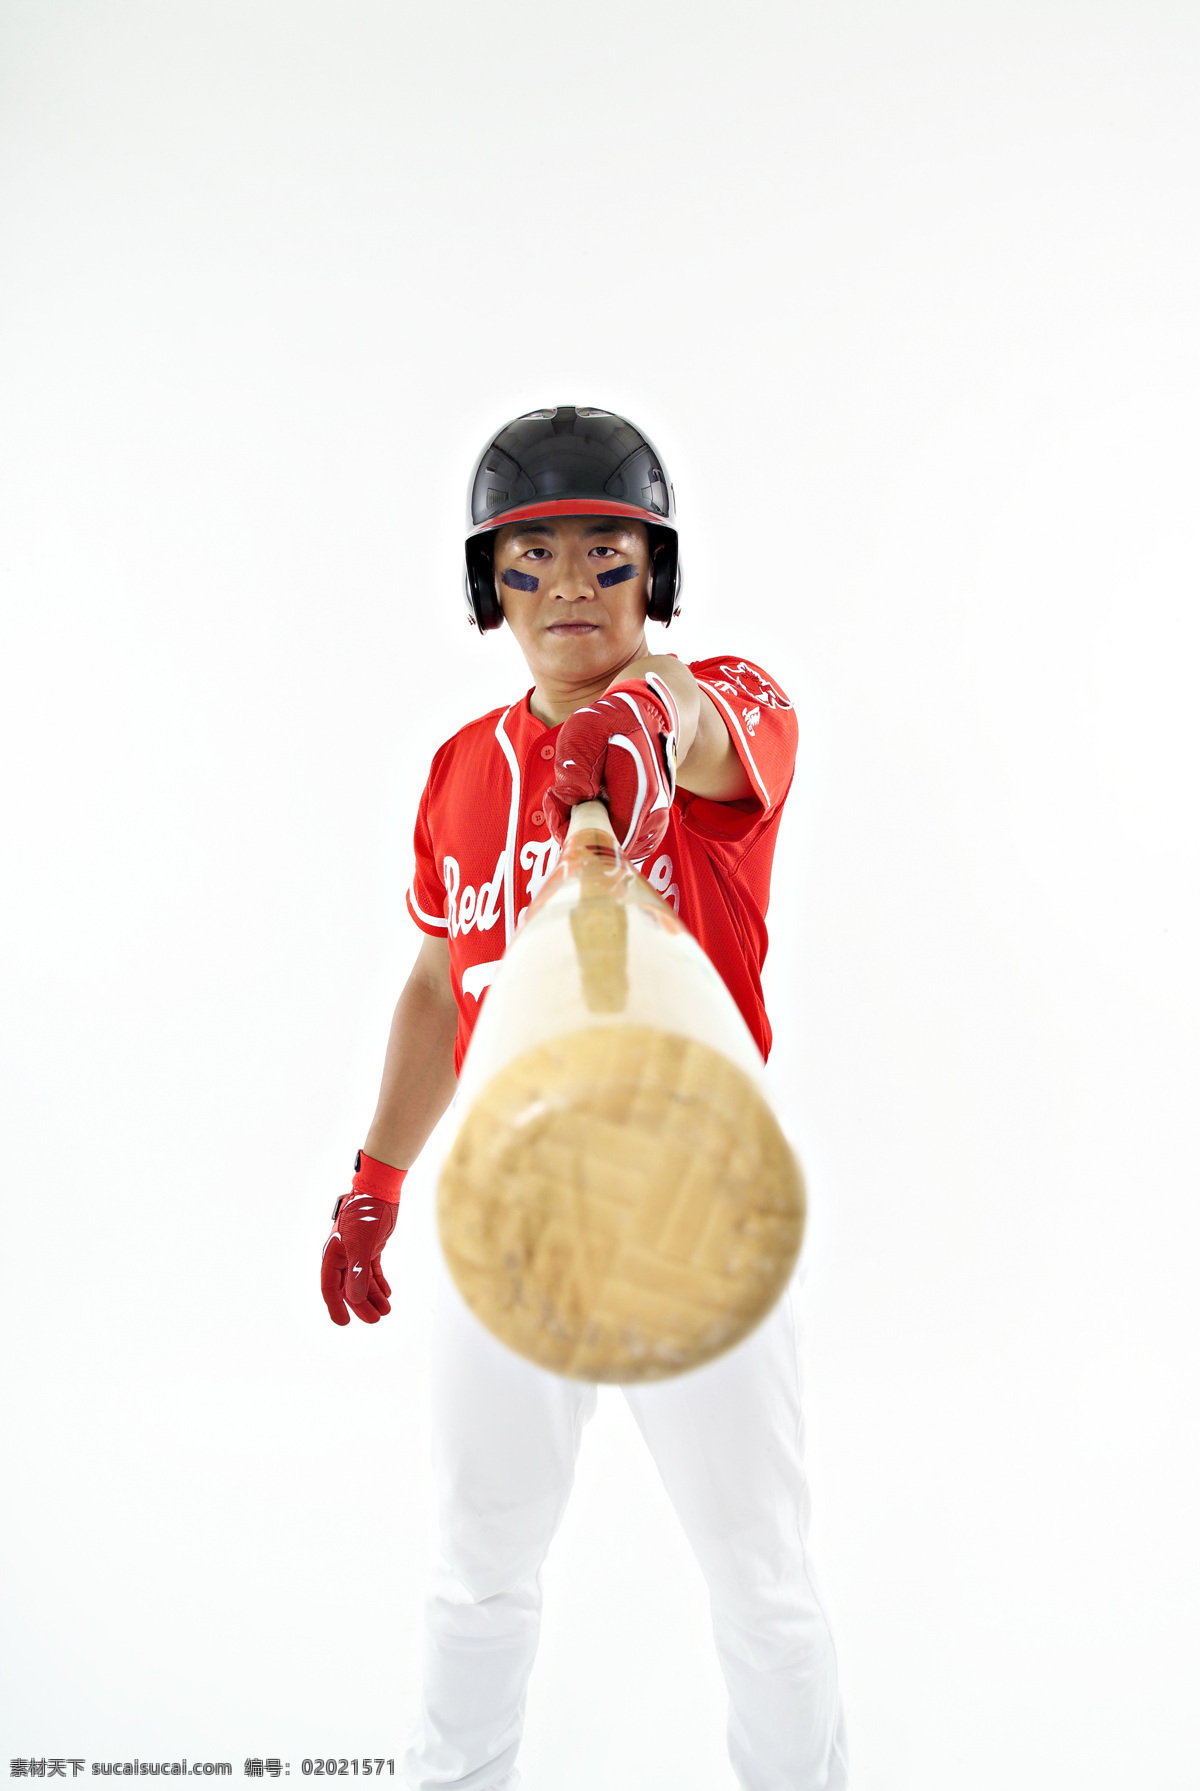 棒球运动 棒球 运动 击球 准备 打棒球 击球手 单纯背景 出击 男性 胜利 文化艺术 体育运动 设计图库